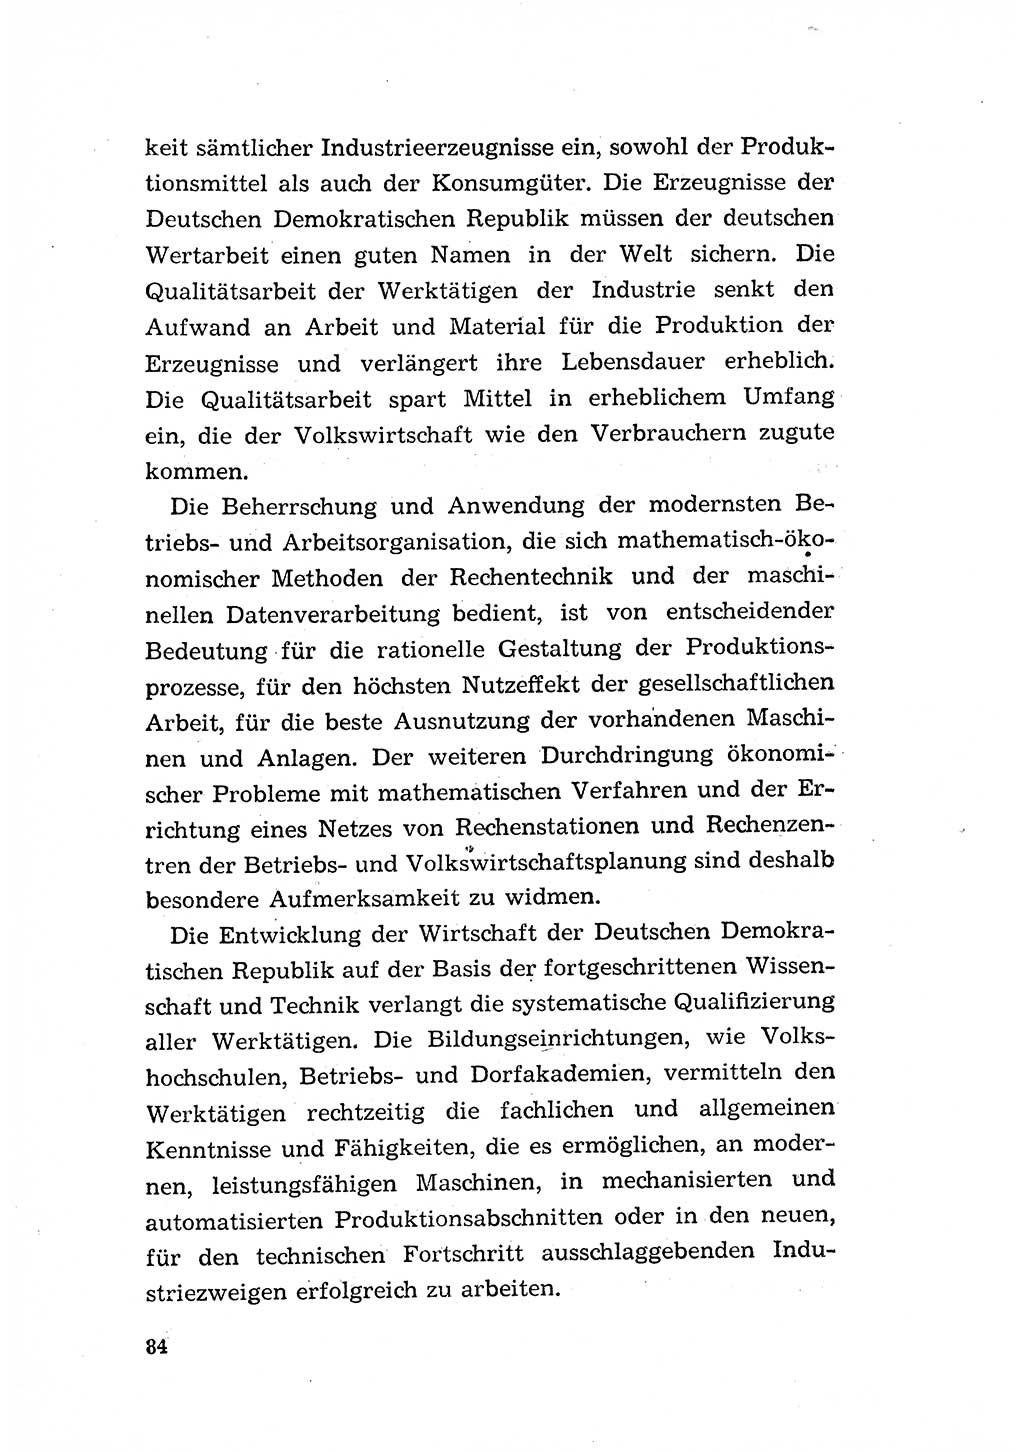 Programm der Sozialistischen Einheitspartei Deutschlands (SED) [Deutsche Demokratische Republik (DDR)] 1963, Seite 84 (Progr. SED DDR 1963, S. 84)